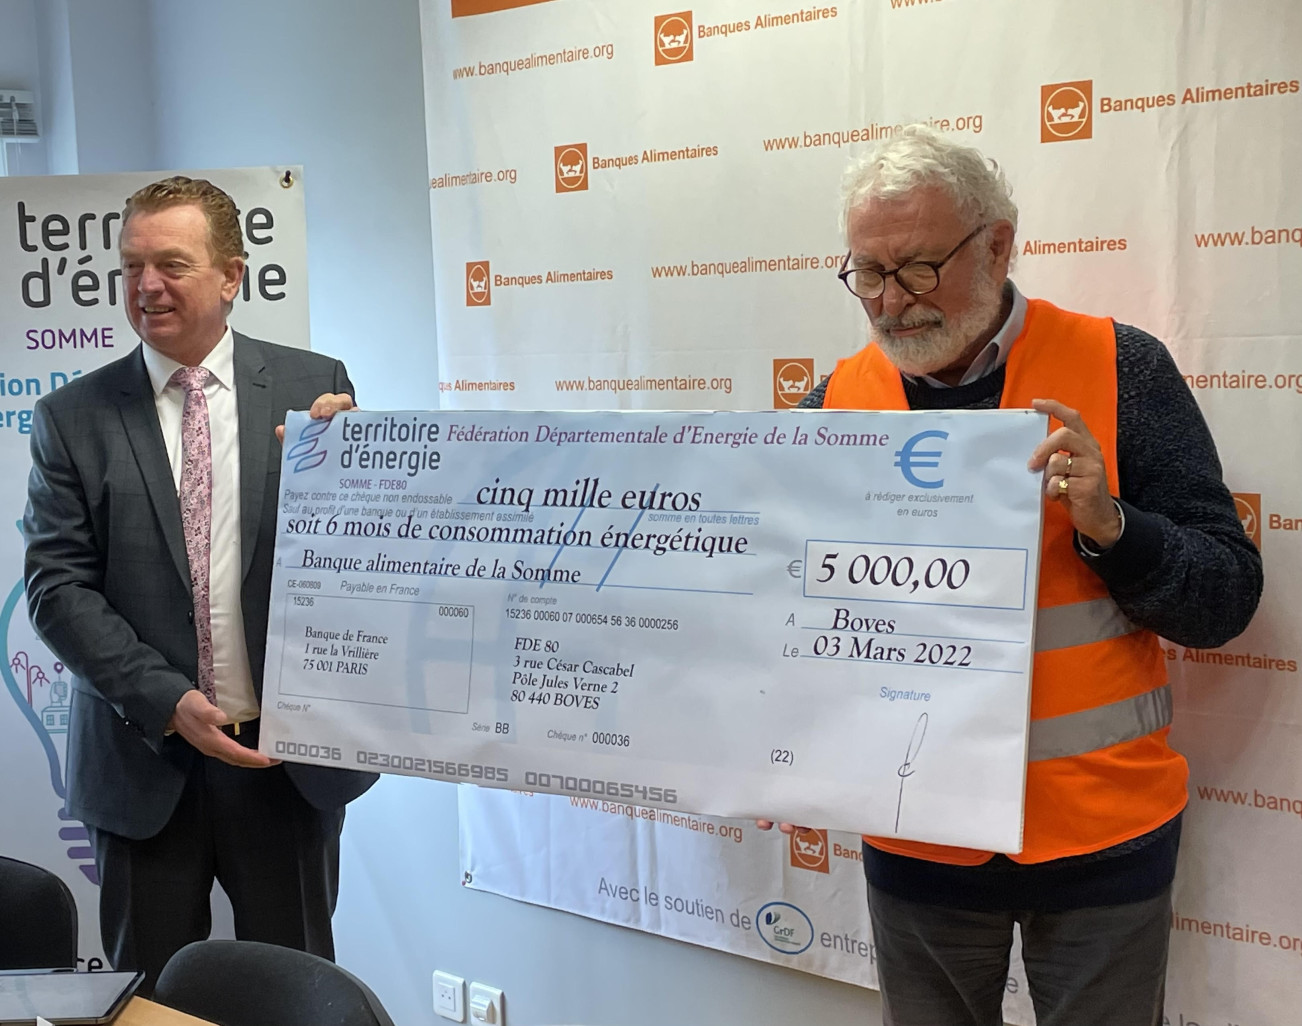 La FDE80 fait un don de 5 000 euros à la Banque alimentaire de la Somme